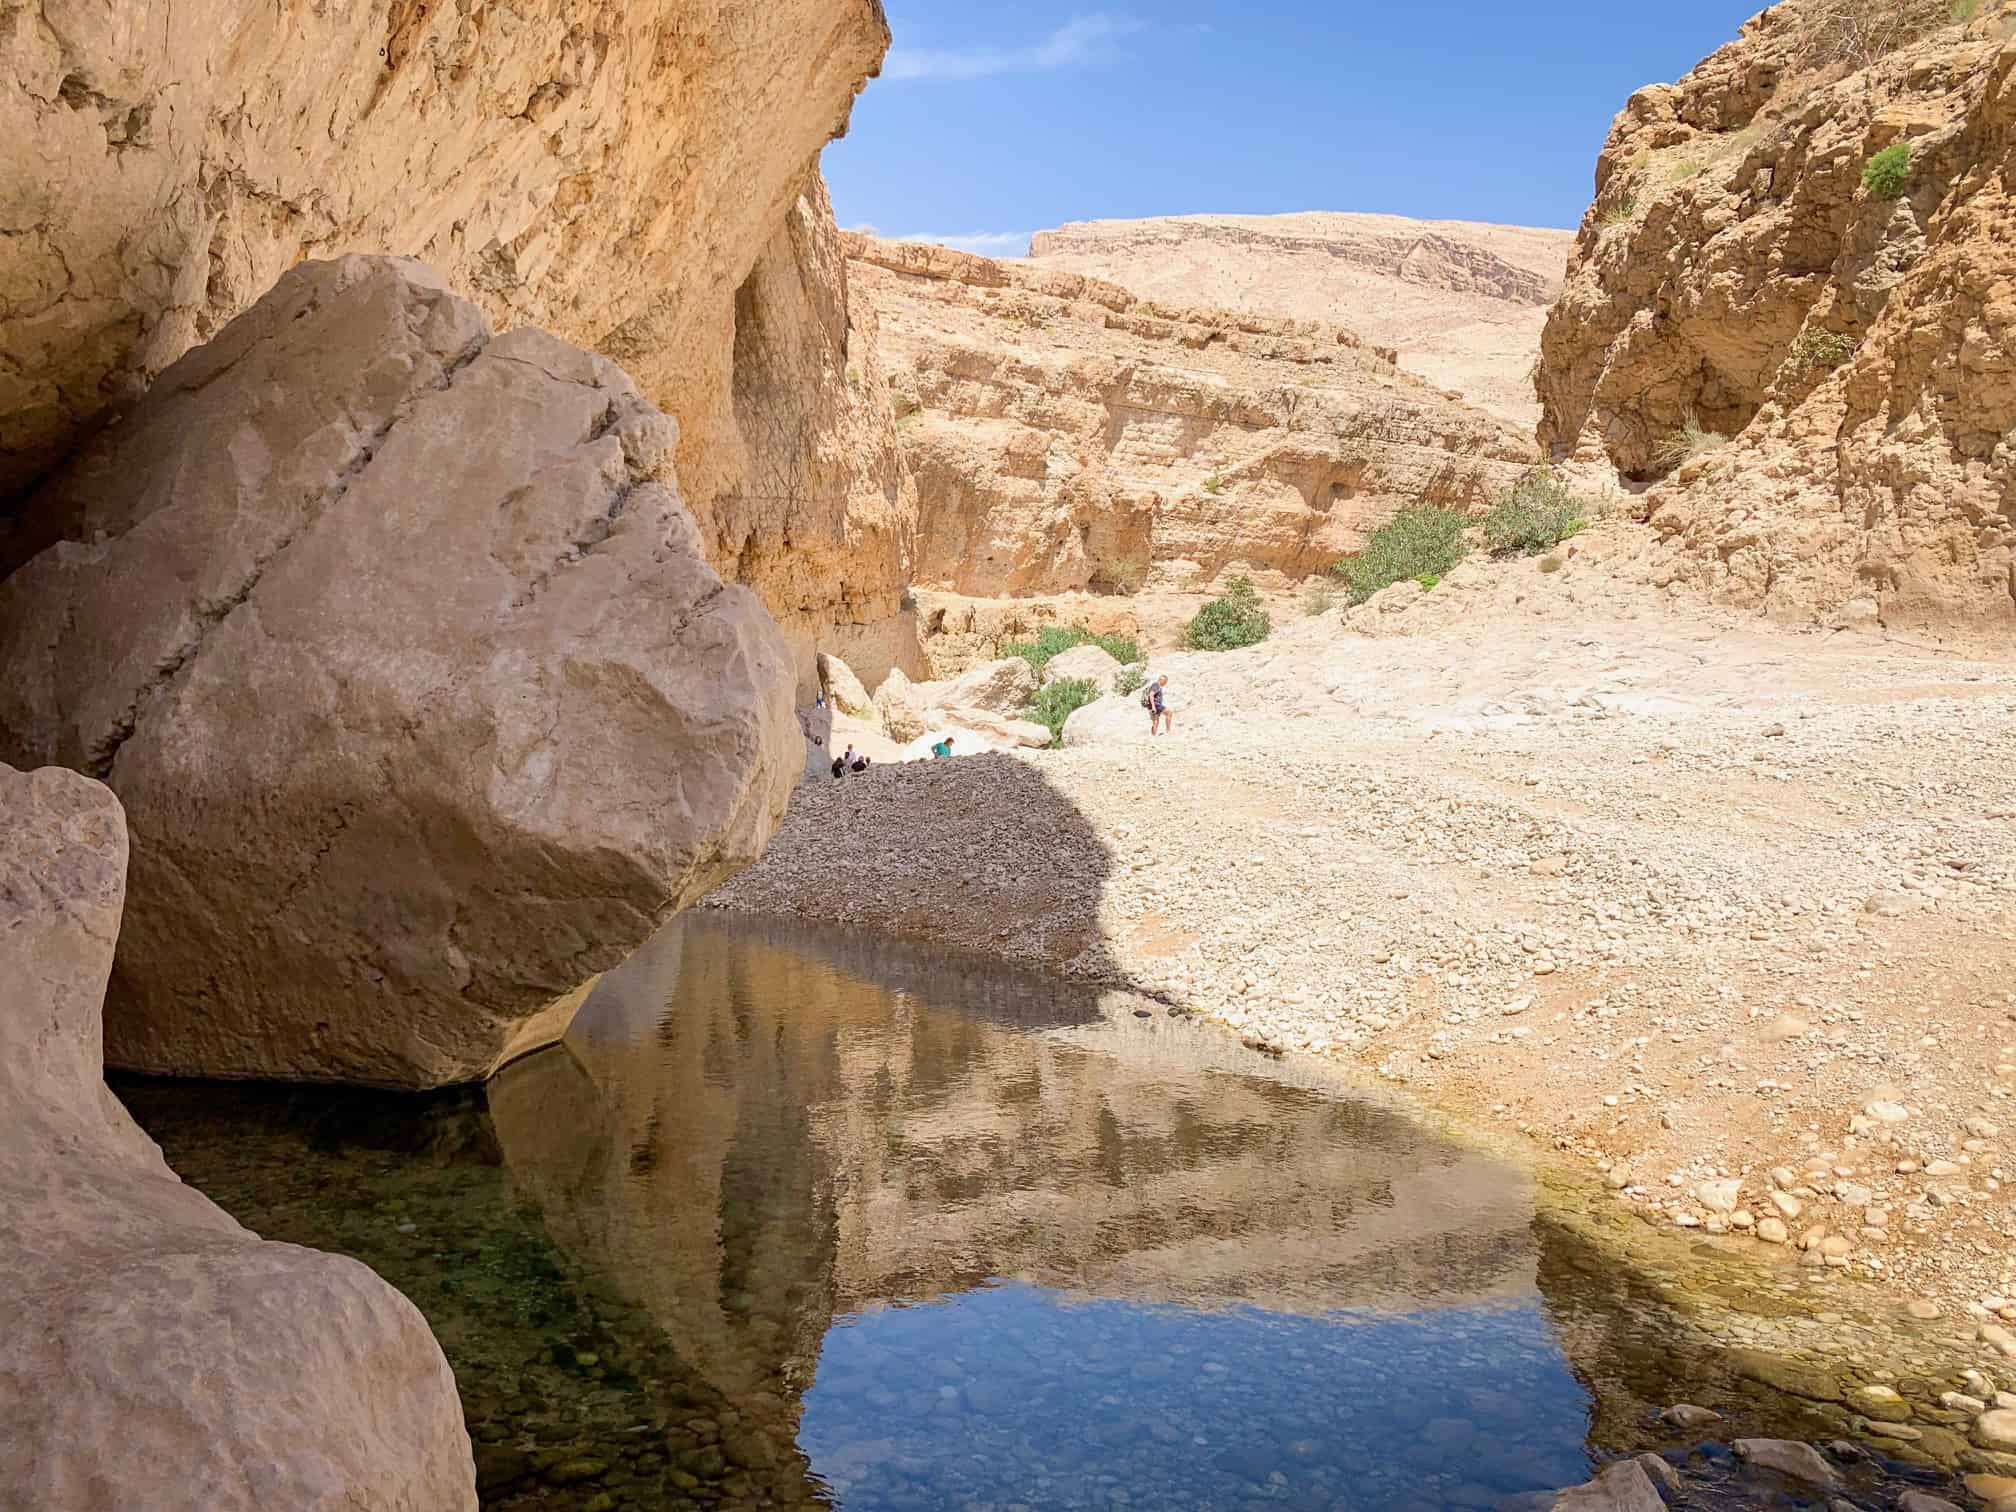 Hike to the cave at Wadi Bani Khalid